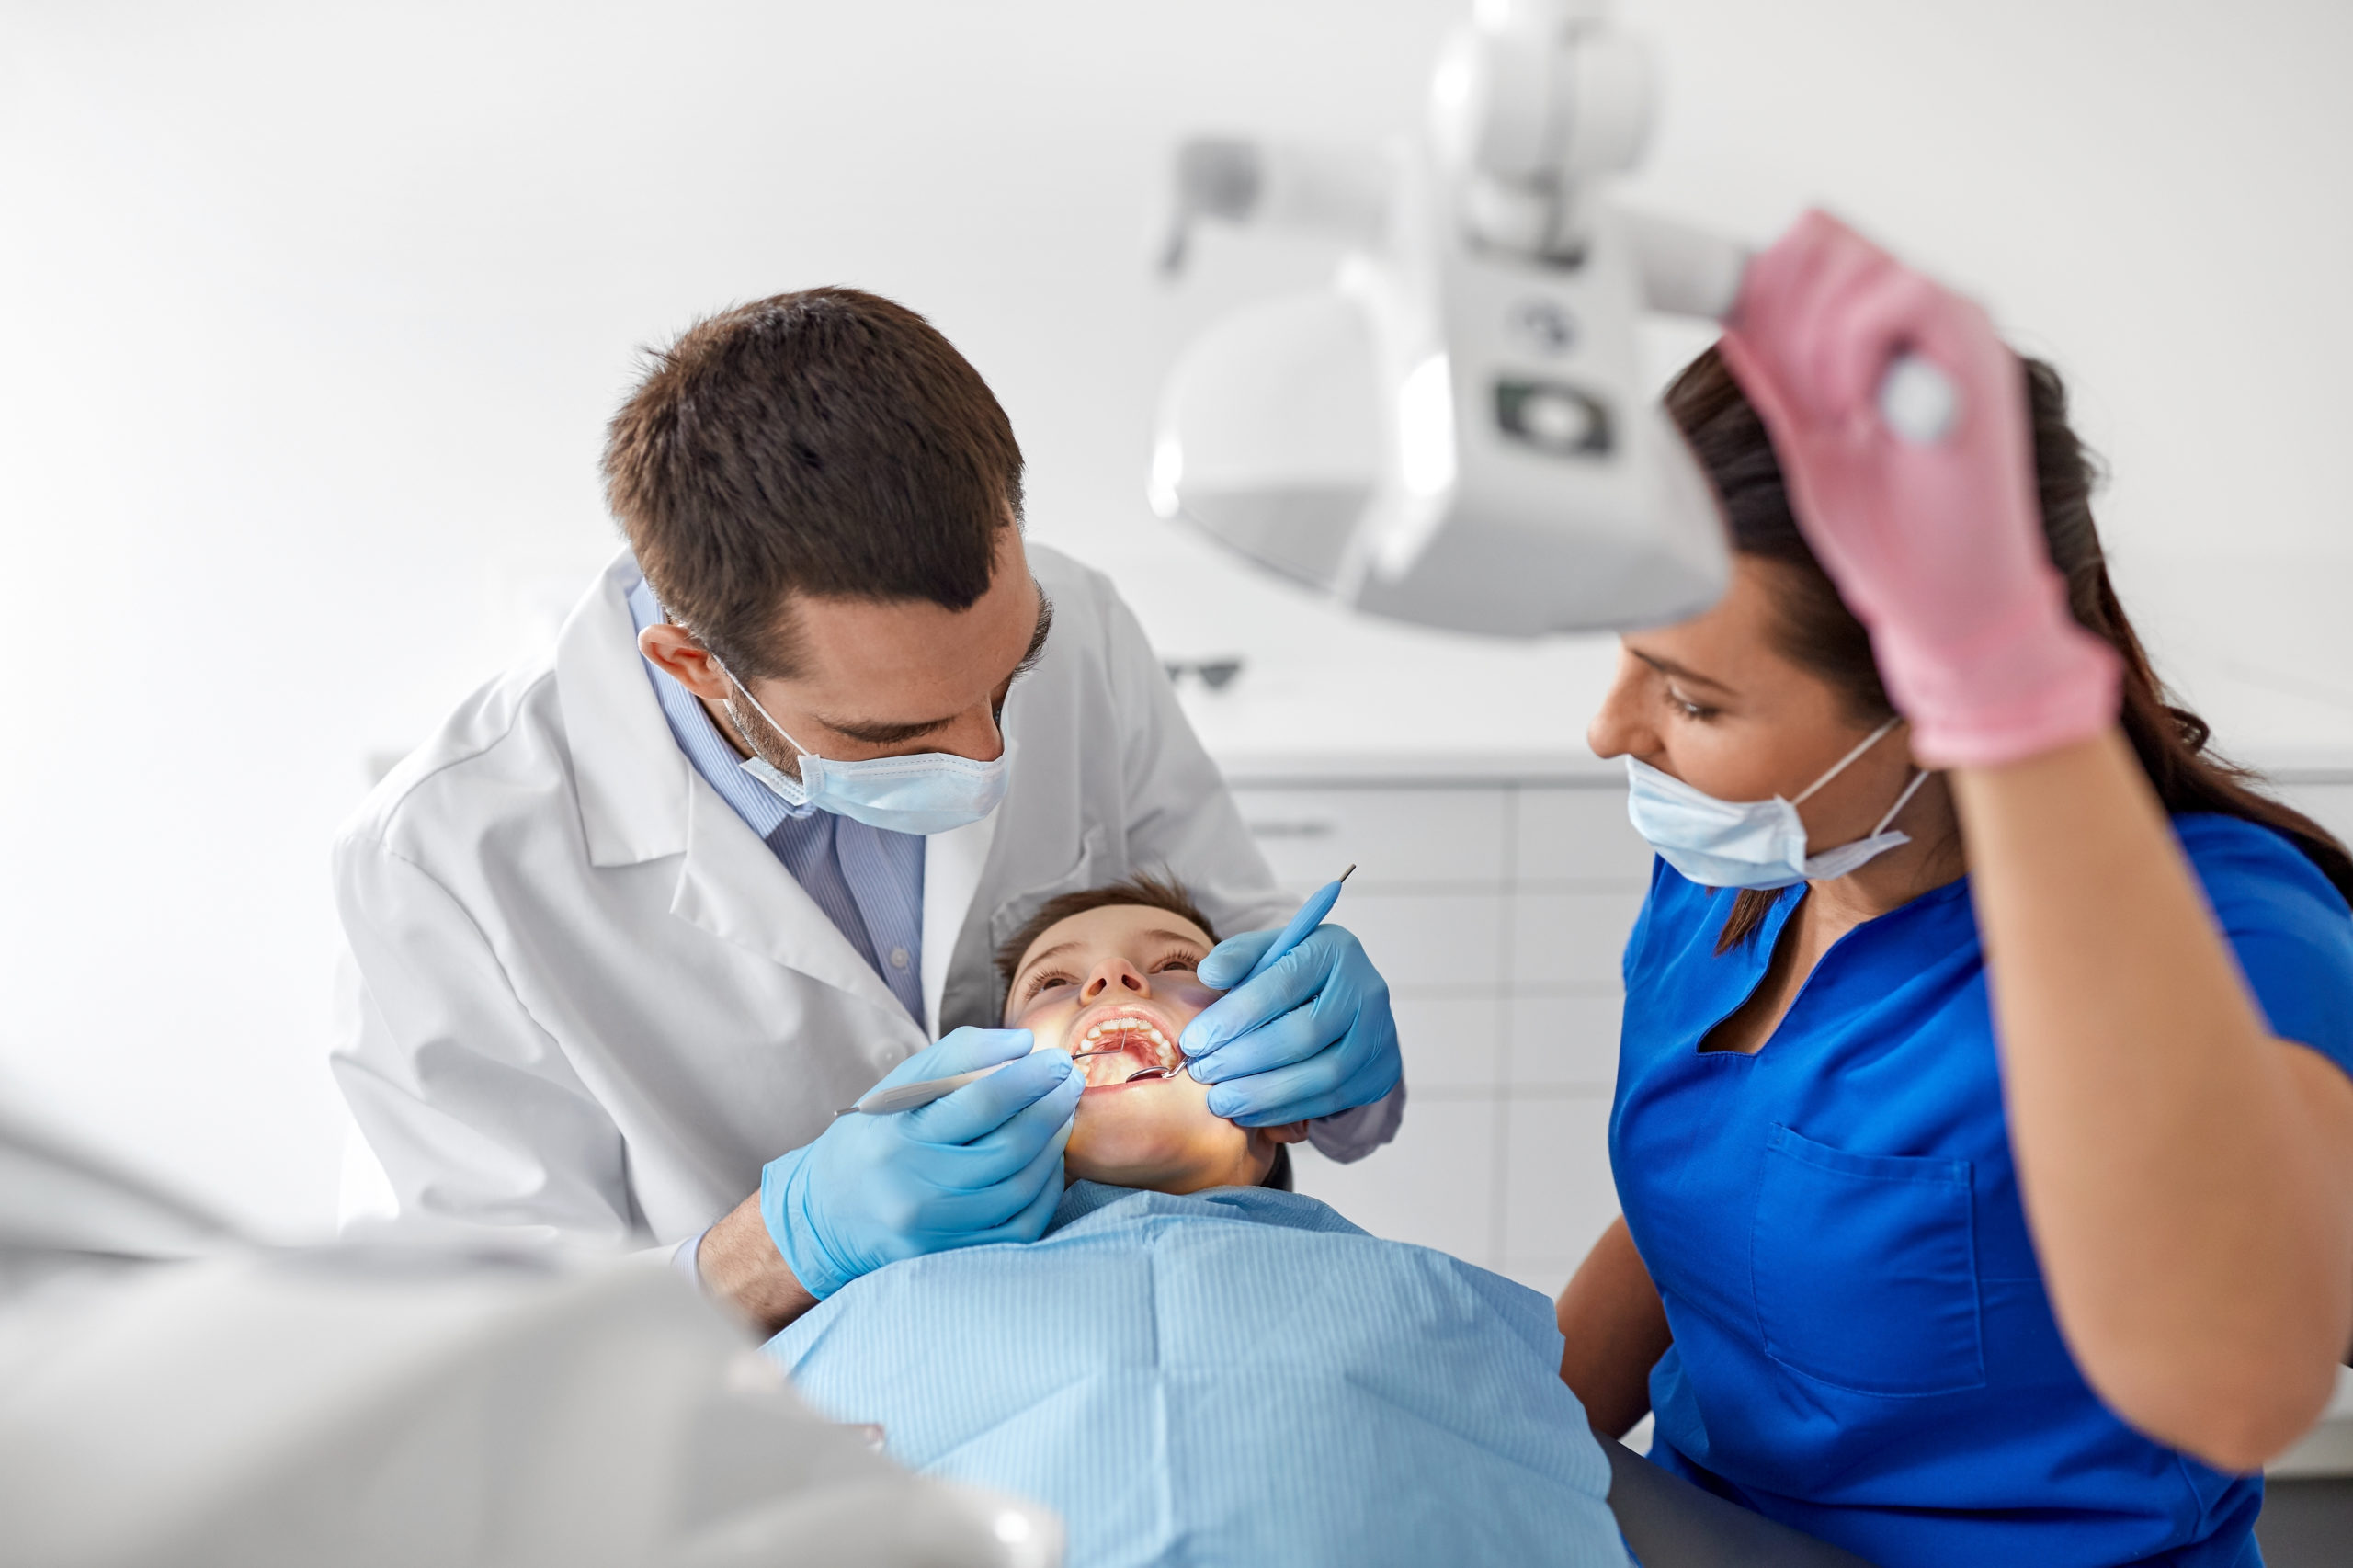 Dentistry and Dental Hygiene